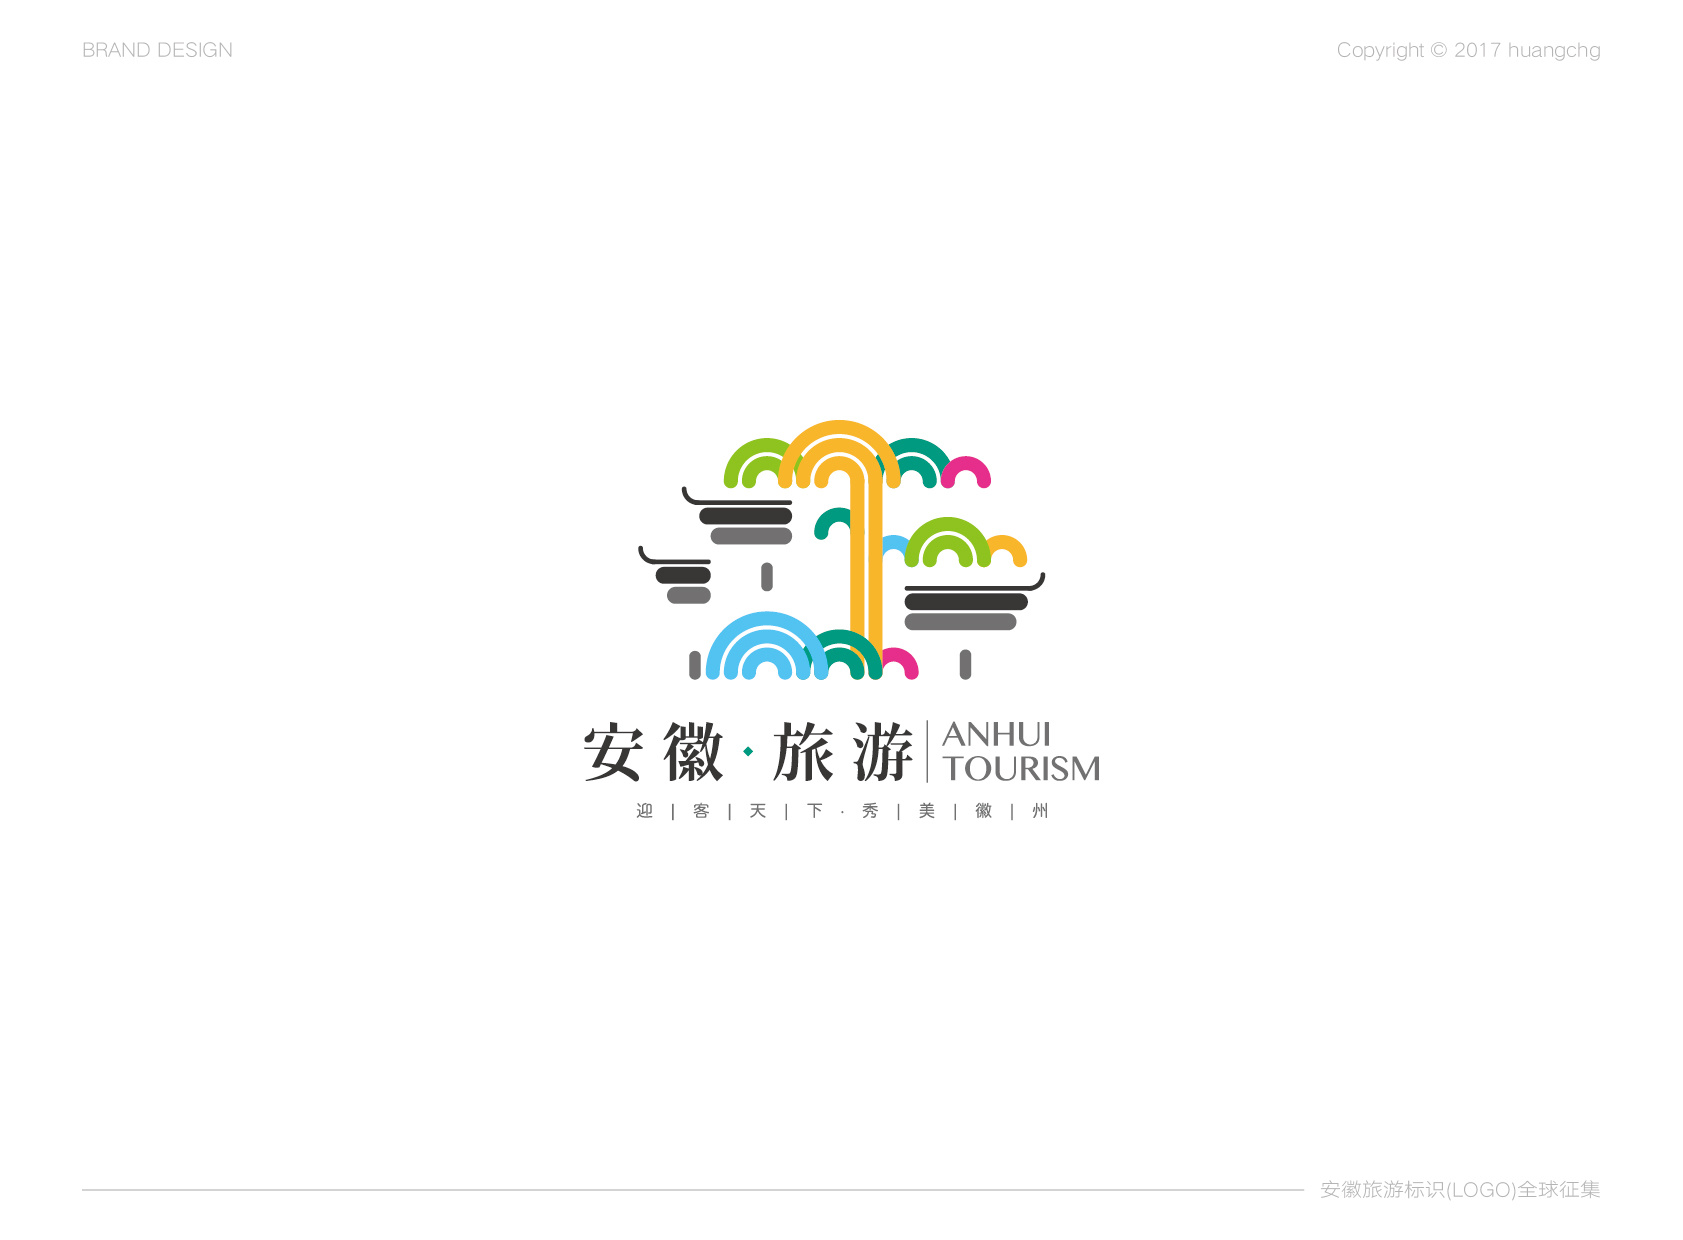 安徽旅游形象标识(logo)作品征集方案